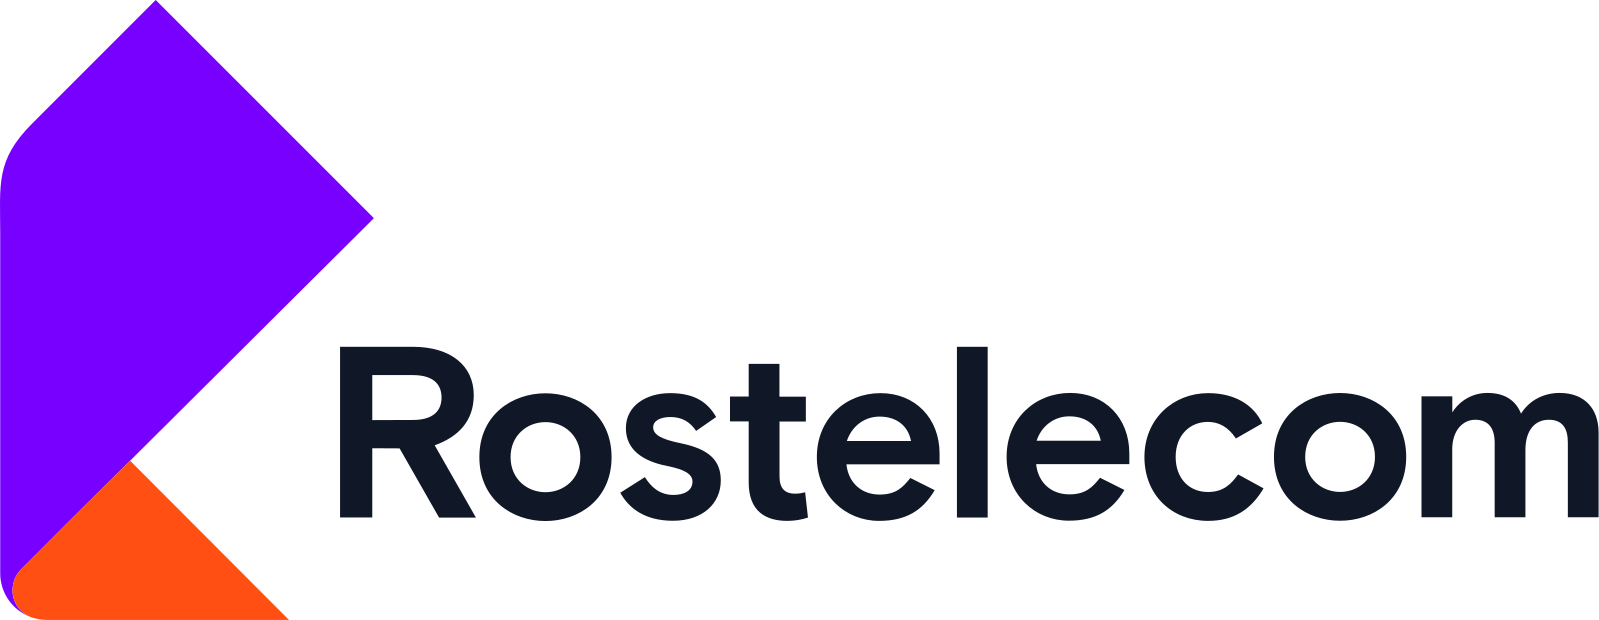 Логотип Ростелеком на белом фоне